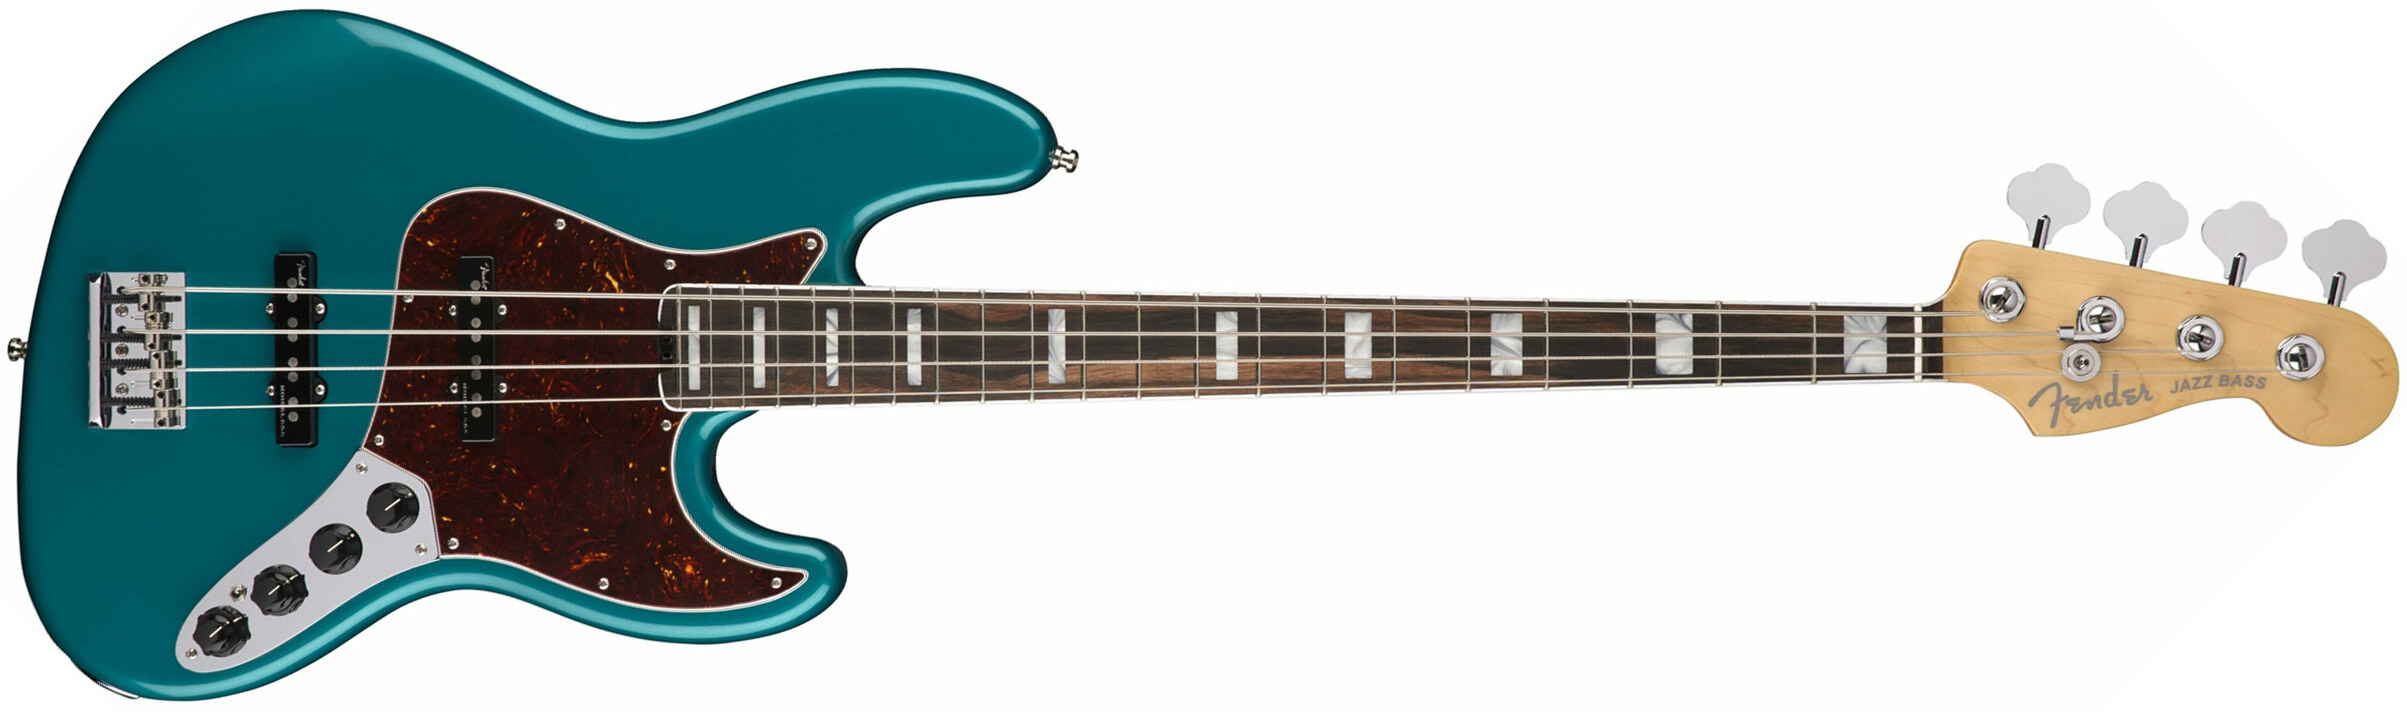 Fender American Elite Jazz Bass 2018 Usa Eb - Ocean Turquoise - Bajo eléctrico de cuerpo sólido - Main picture